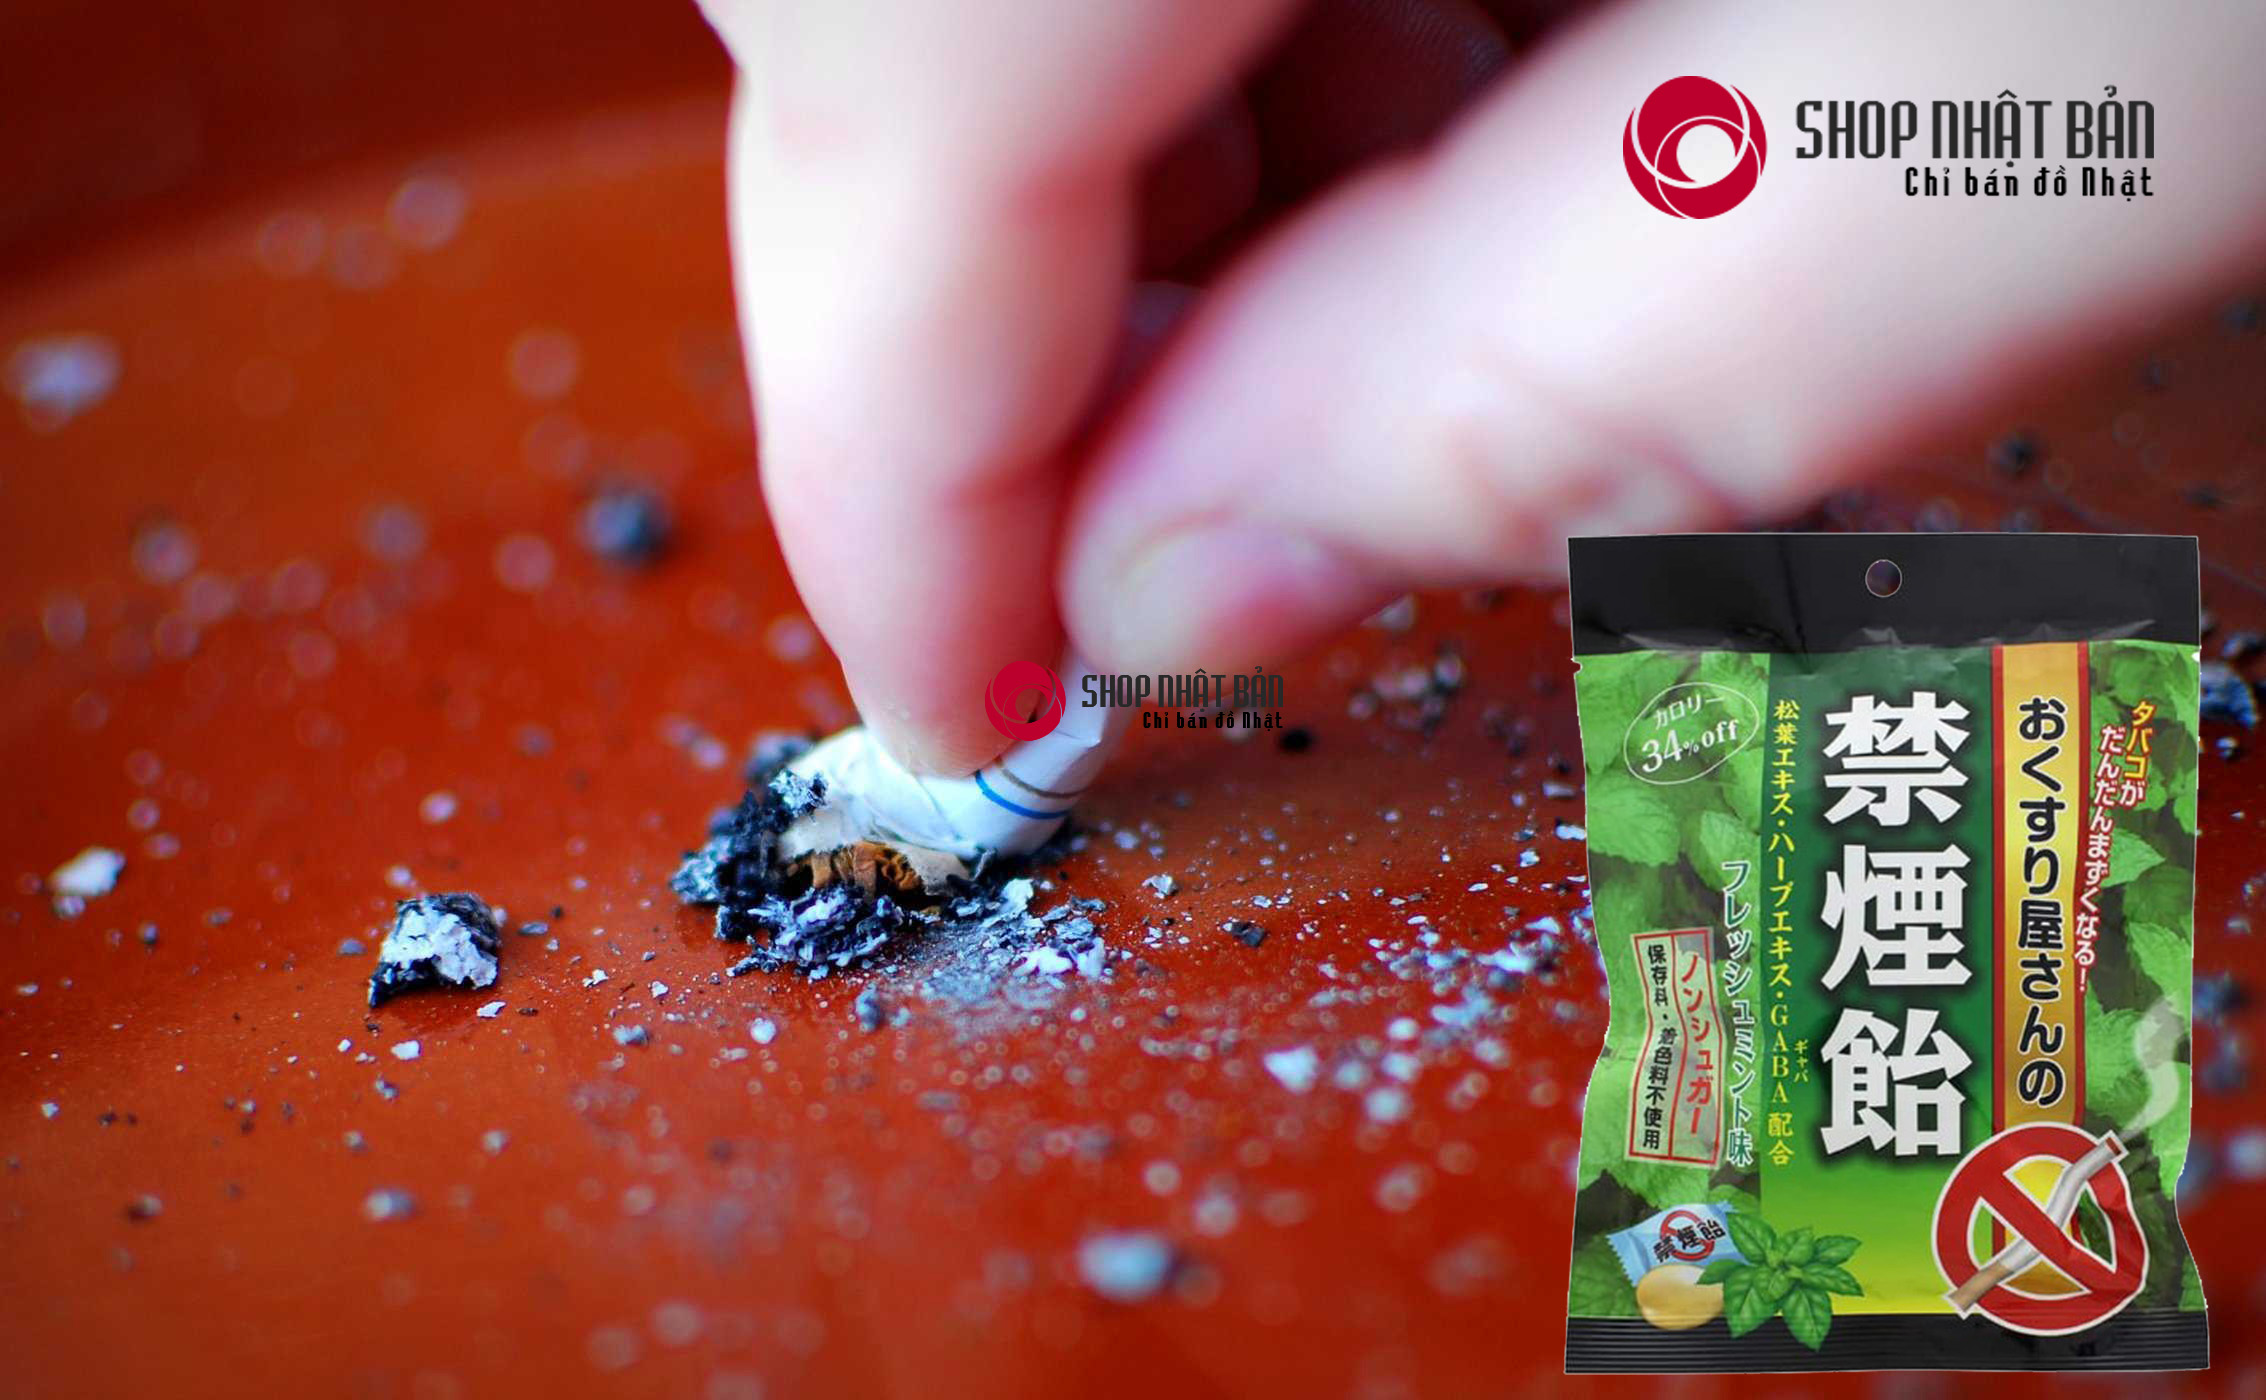 Kẹo cai thuốc lá Nhật Bản Smokeless được điều chế dựa trên nghiên cứu khoa học của các chuyên gia tại Nhật, hoạt chất Polacrilex sản sinh trong khi ngậm kẹo là thành tố chính  giúp giảm thèm thuốc. 